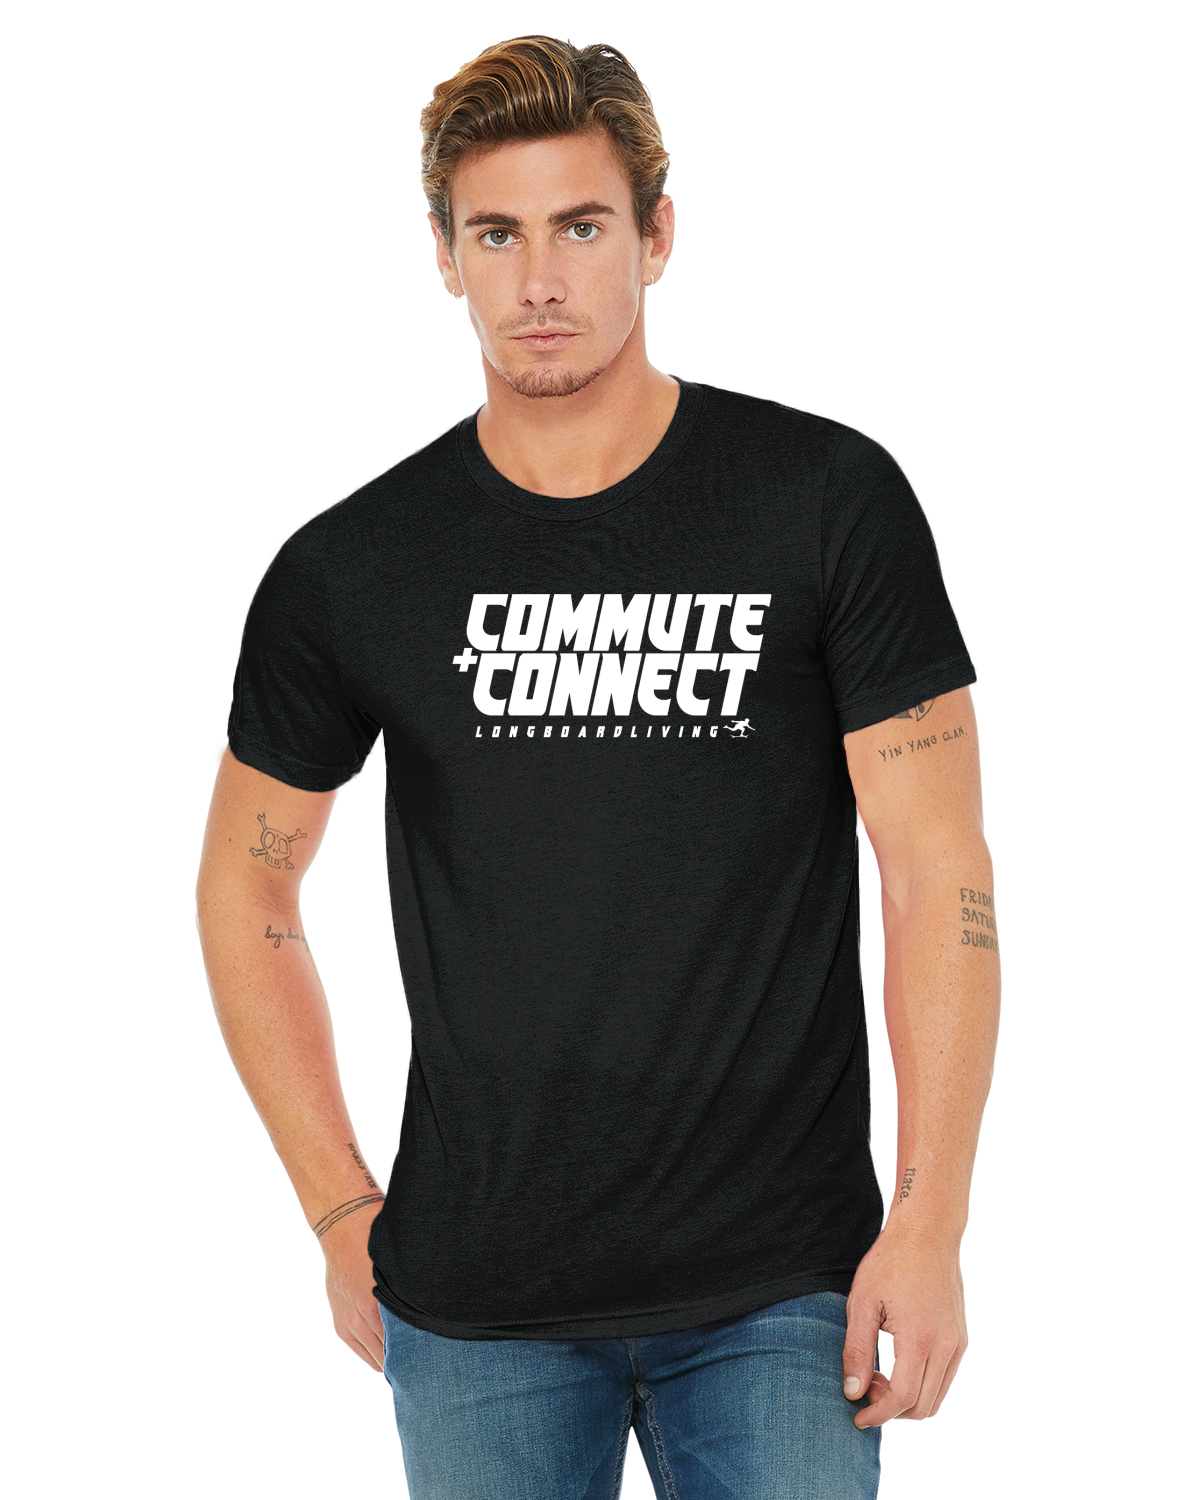 Commute & Connect Shirt